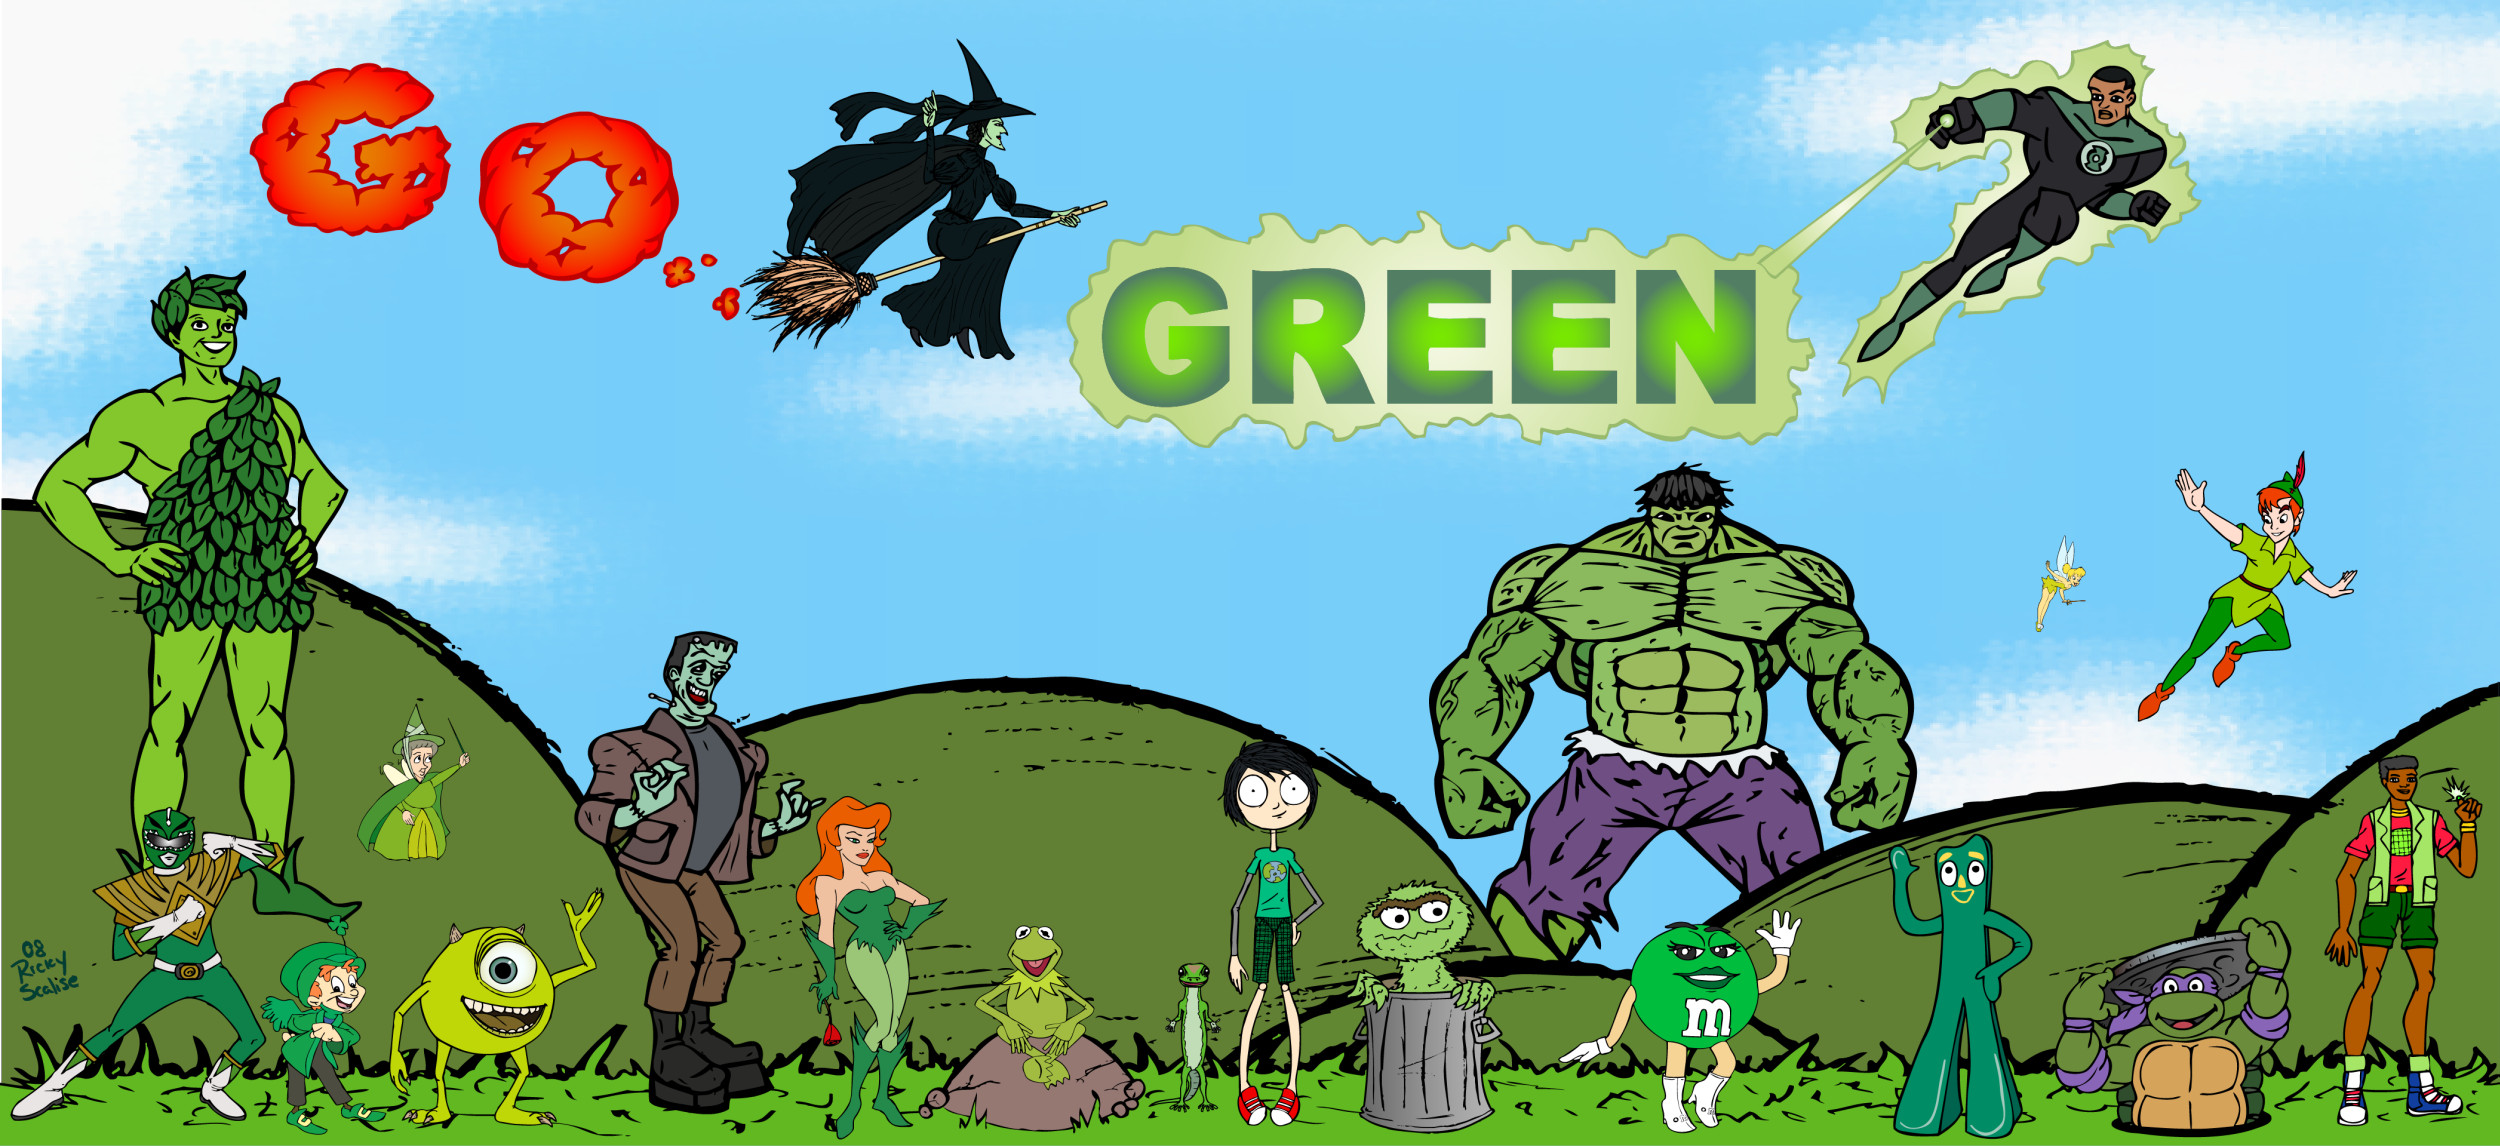 tv show, crossover, green lantern, green ranger, hulk, john stewart (green lantern), kermit the frog, mike wazowski, peter pan, poison ivy, tinker bell